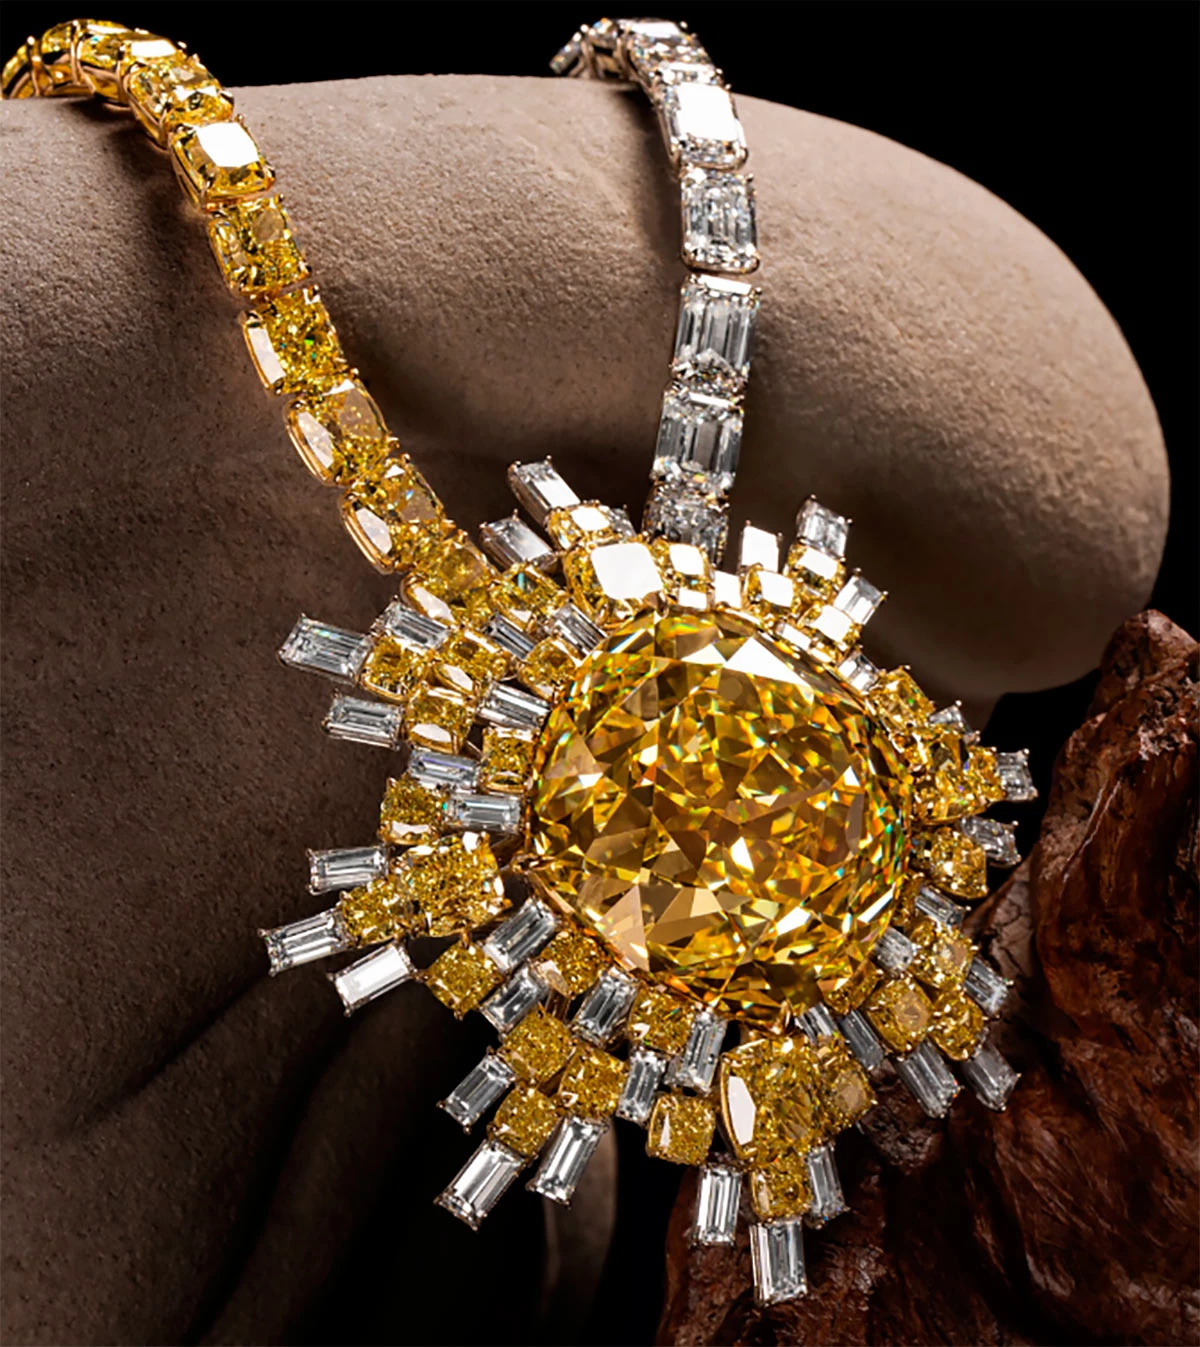 Почти 700 млн руб. за камень: редчайший желтый бриллиант «Звезда Альгейба»продадут на аукционе